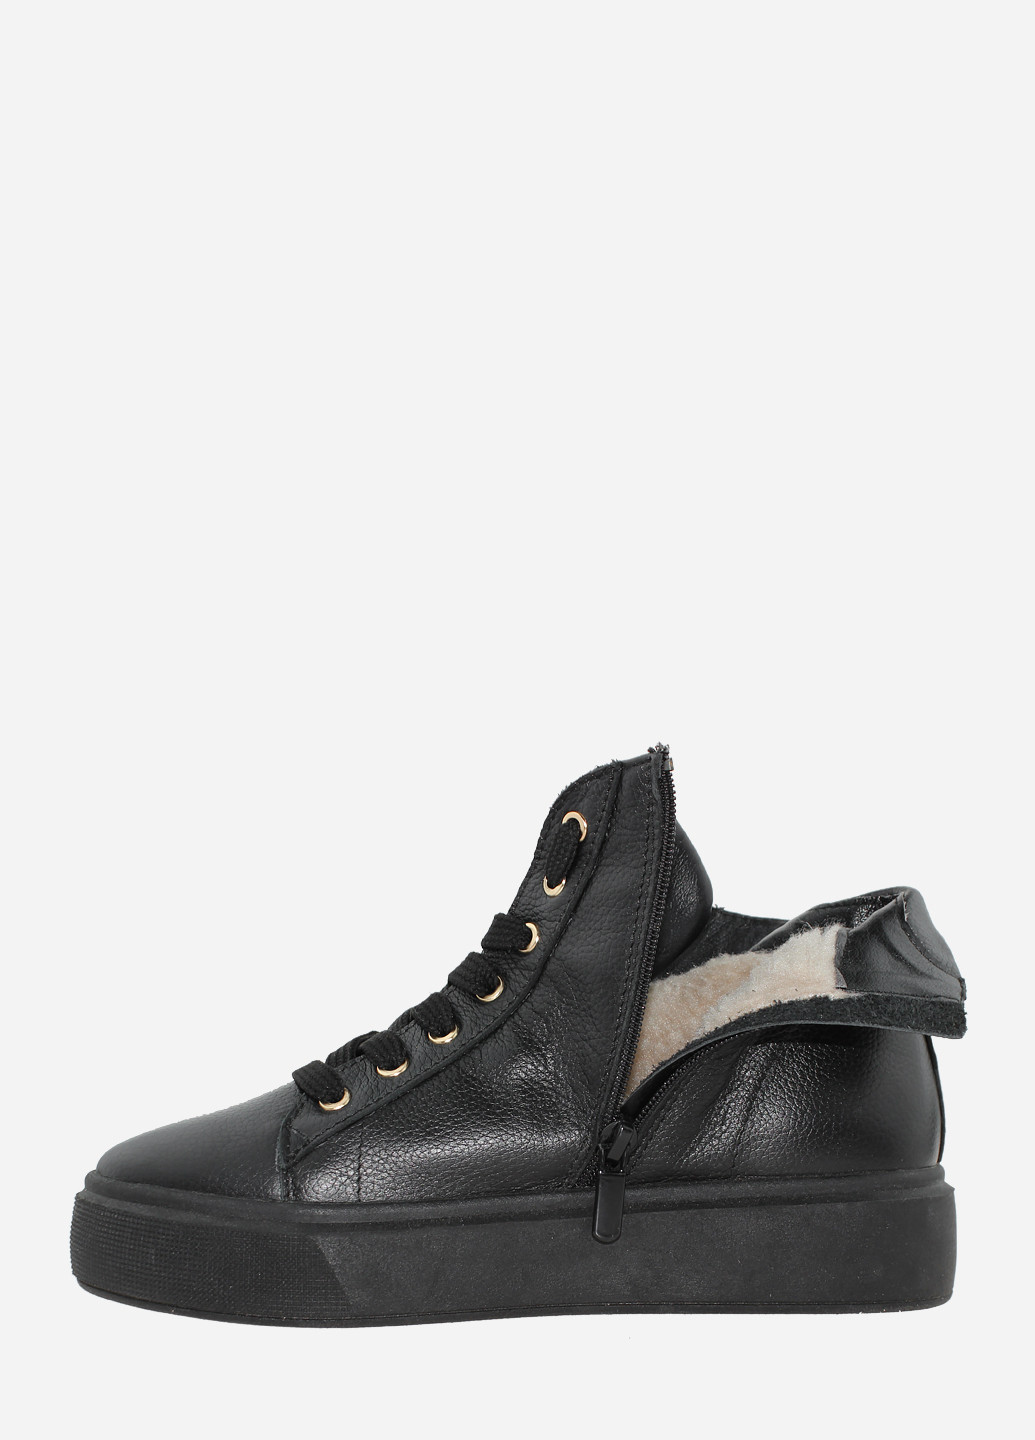 Зимние ботинки rs02310-22 черный Saurini